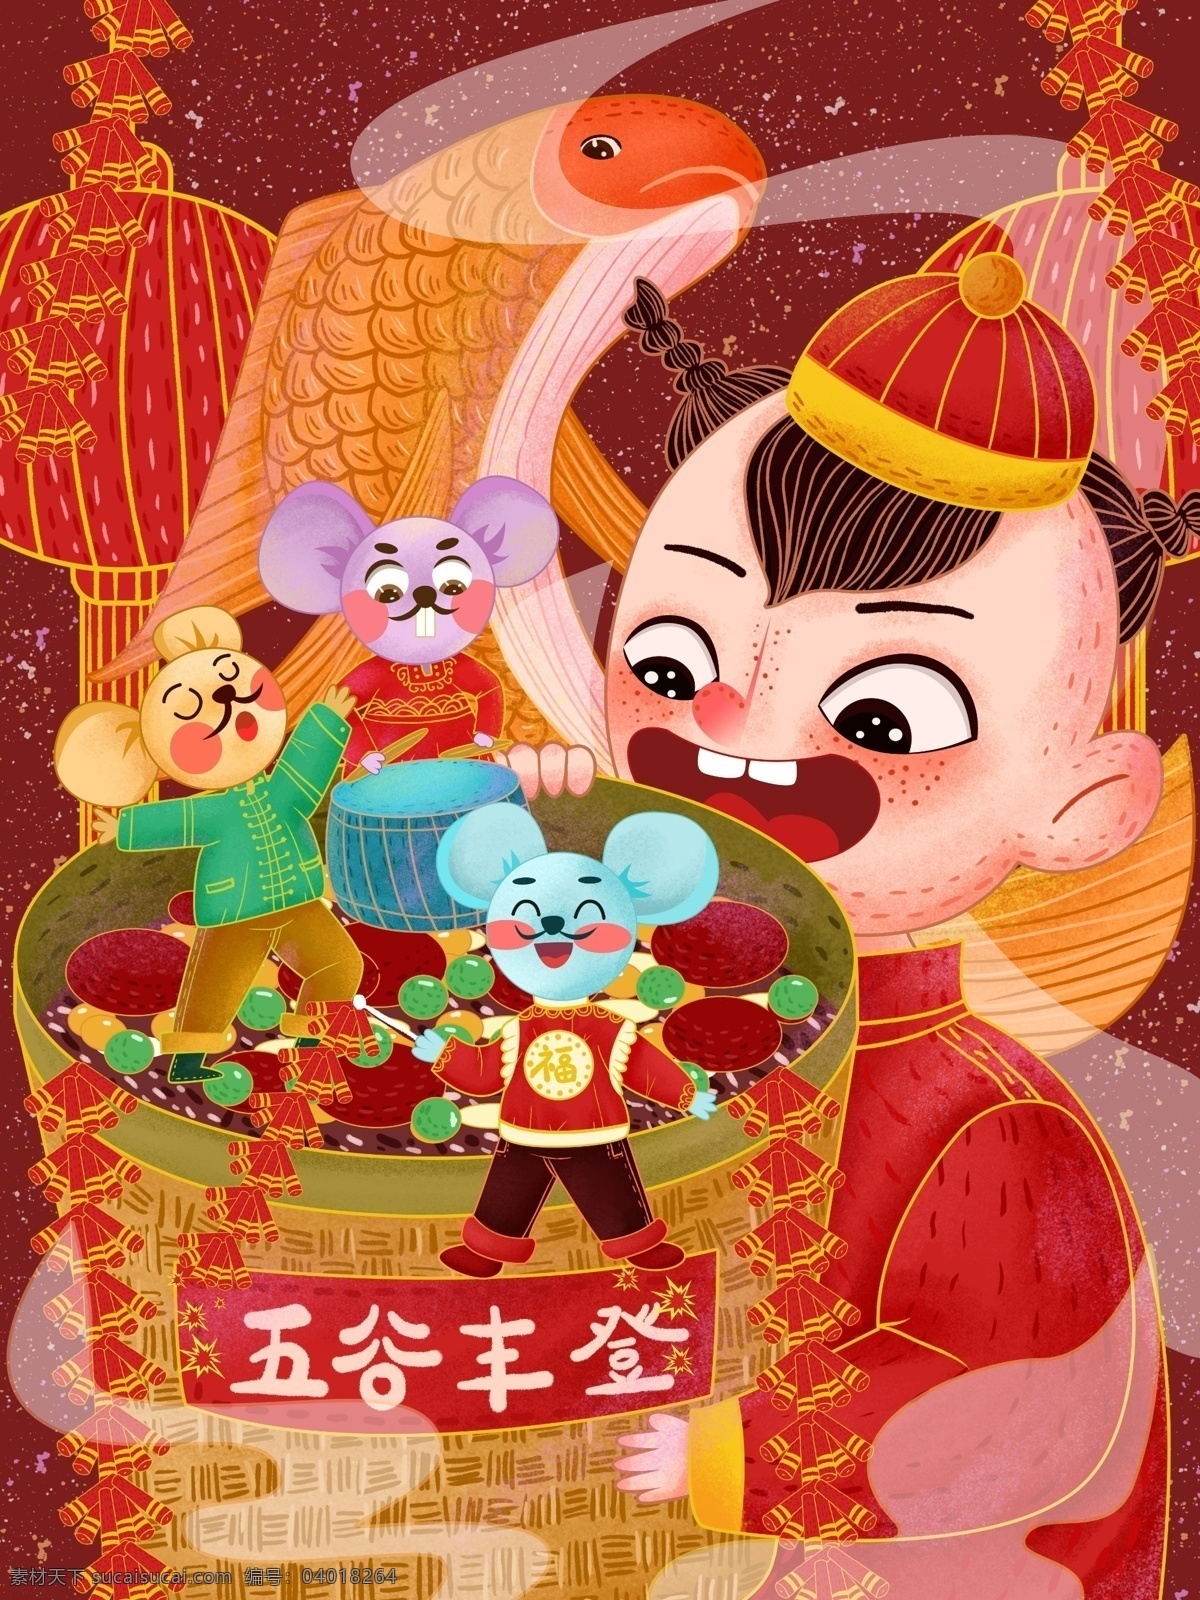 中国 风 鼠年 大吉 原创 插画 鼠年大吉 2020 2020鼠年 节日节气